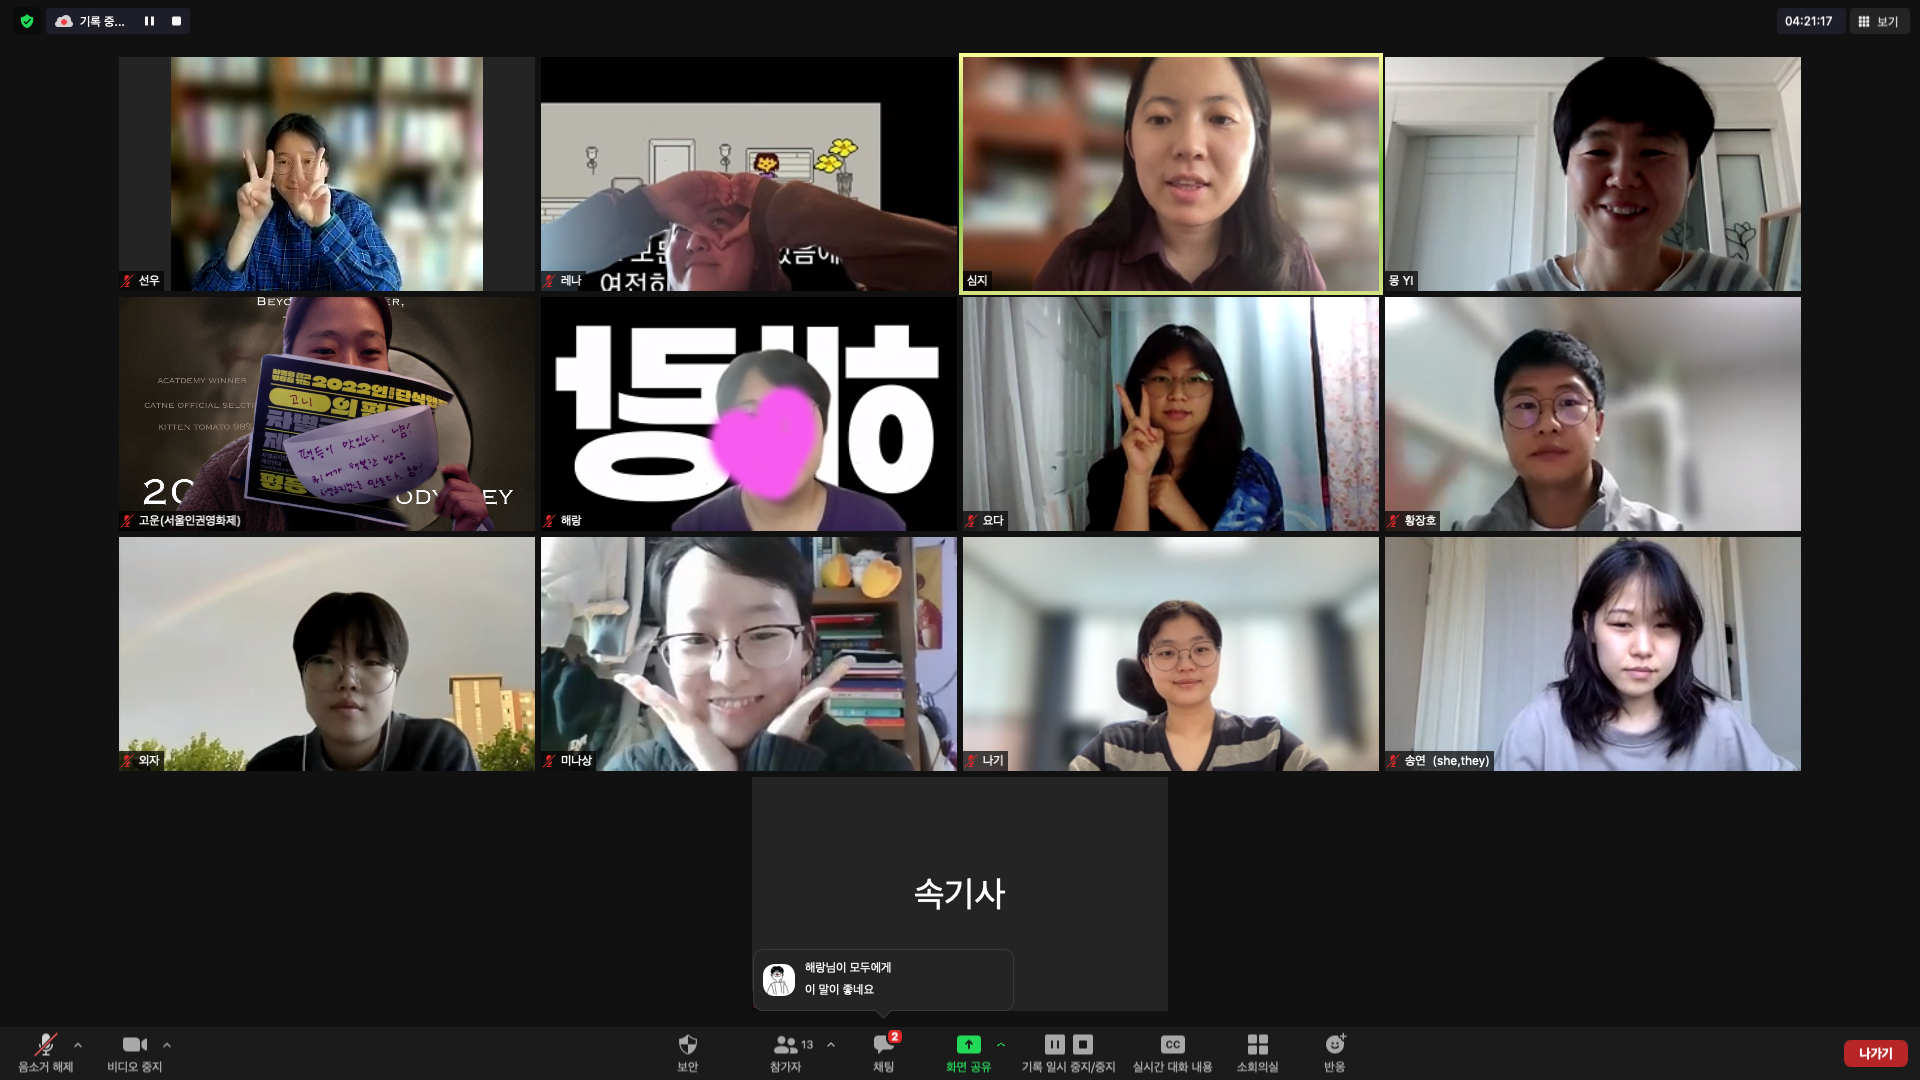 사진. 줌 화면 스크린샷. 워크숍에 참여한 서울인권영화제 활동가들이 각자의 공간에서 웃고 있다. 이야기손님 몽 활동가도 미소 짓고 있다.